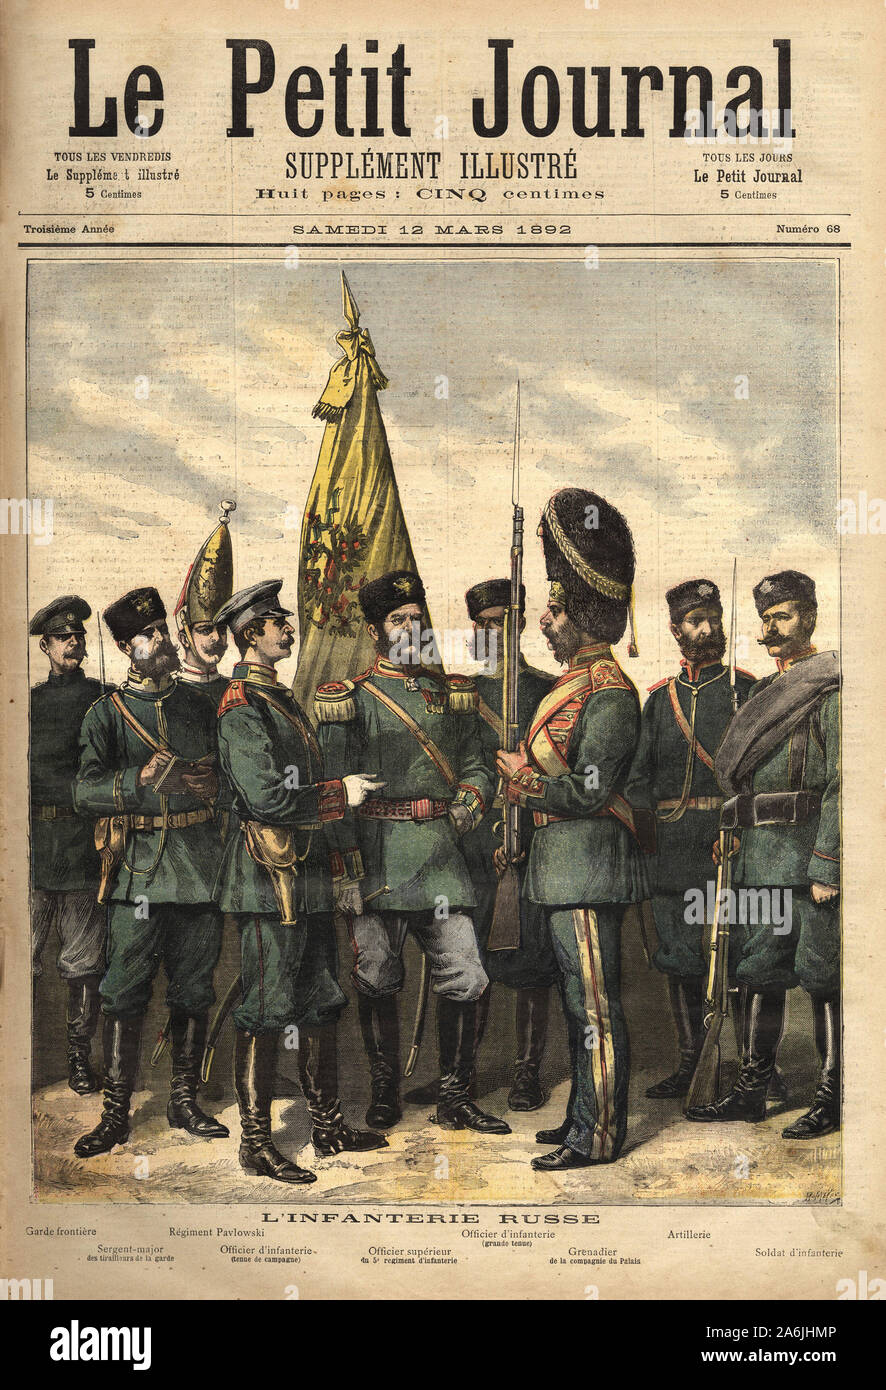 Les uniformes de l'infanterie russe, alliee de la France,  de gauche a droite: le garde frontiere, le sergent major des tirailleurs de la garde, le re Stock Photo